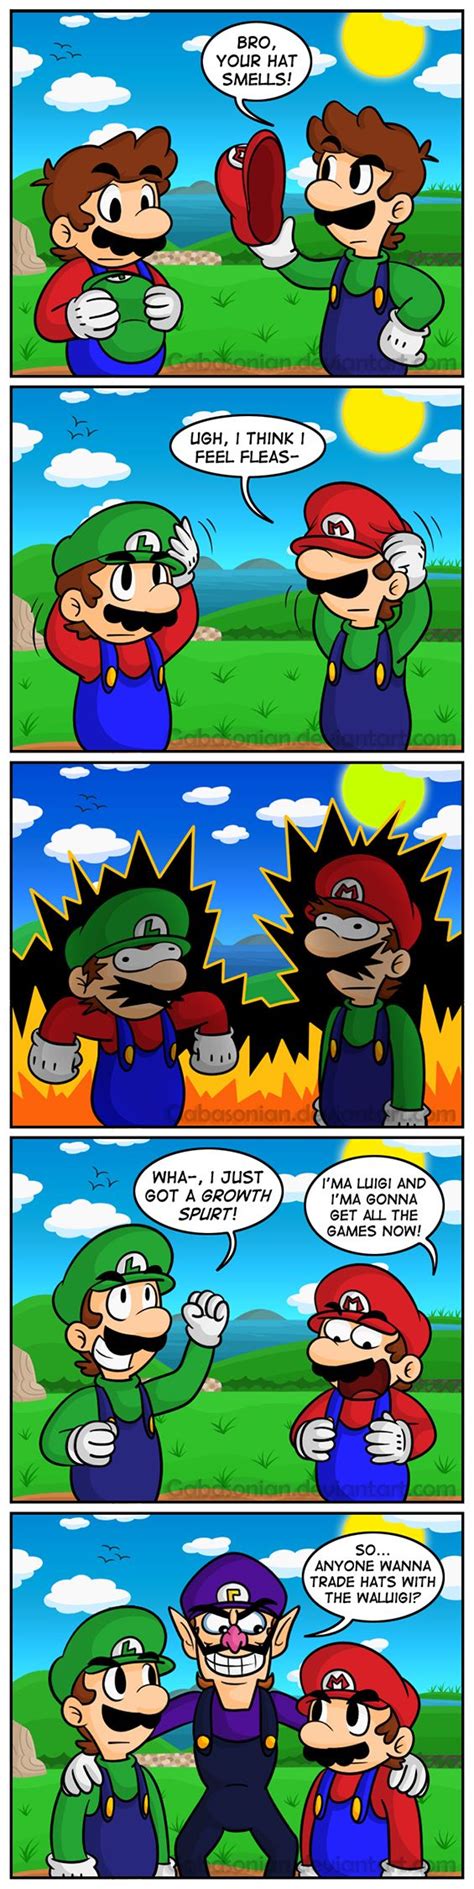 Super Mario 64 DS Poor Waluigi Mario Funny Super Smash Bros Memes